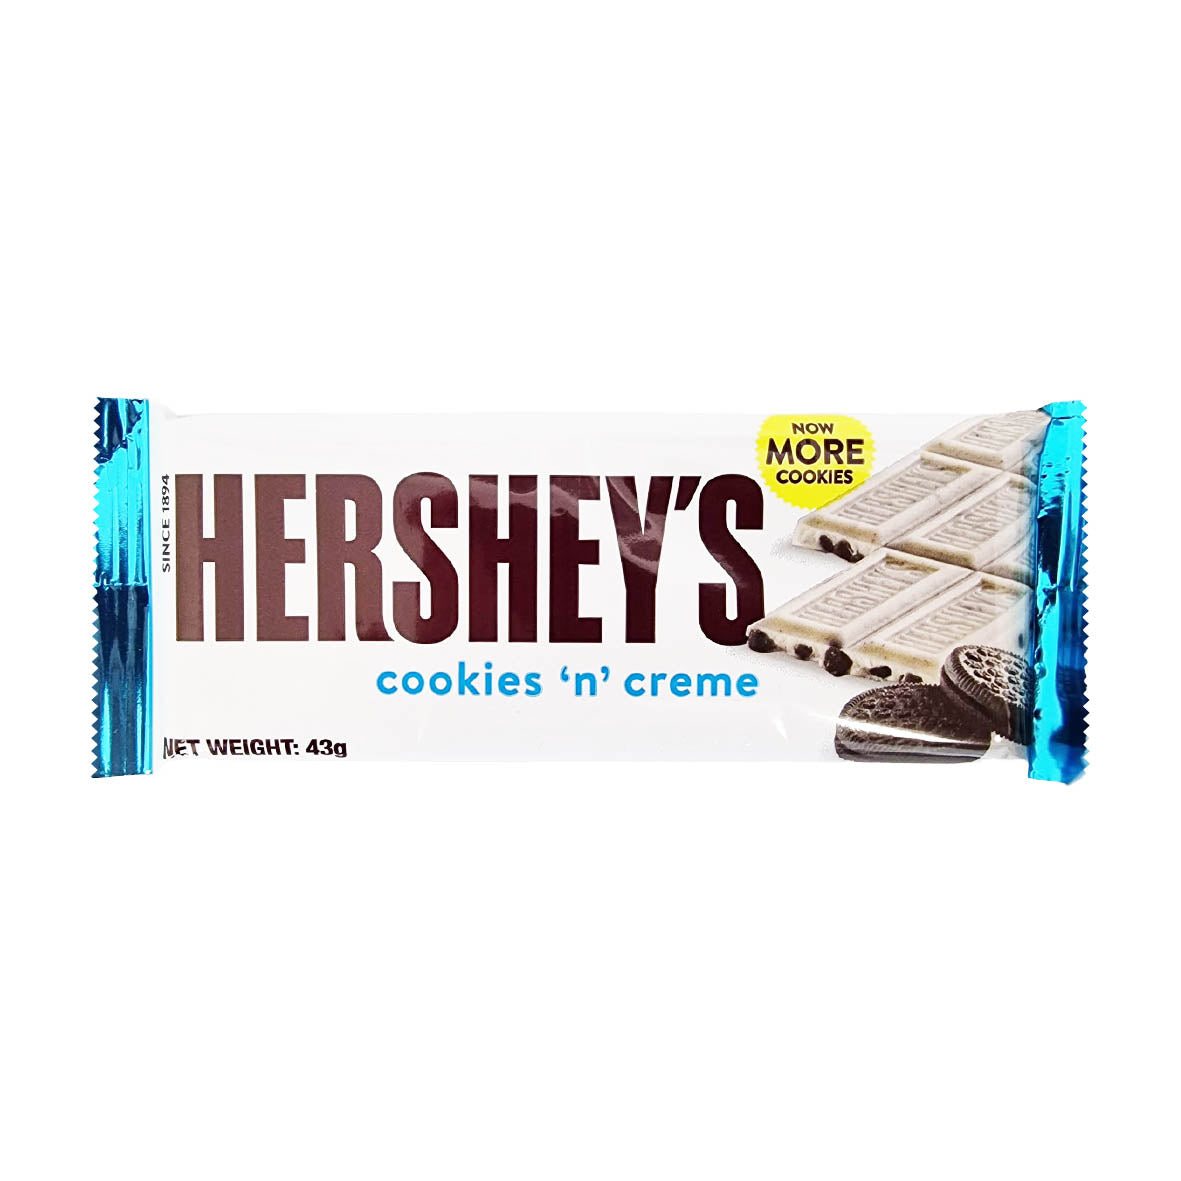 Hershey's Cookies ´n` creme 43g